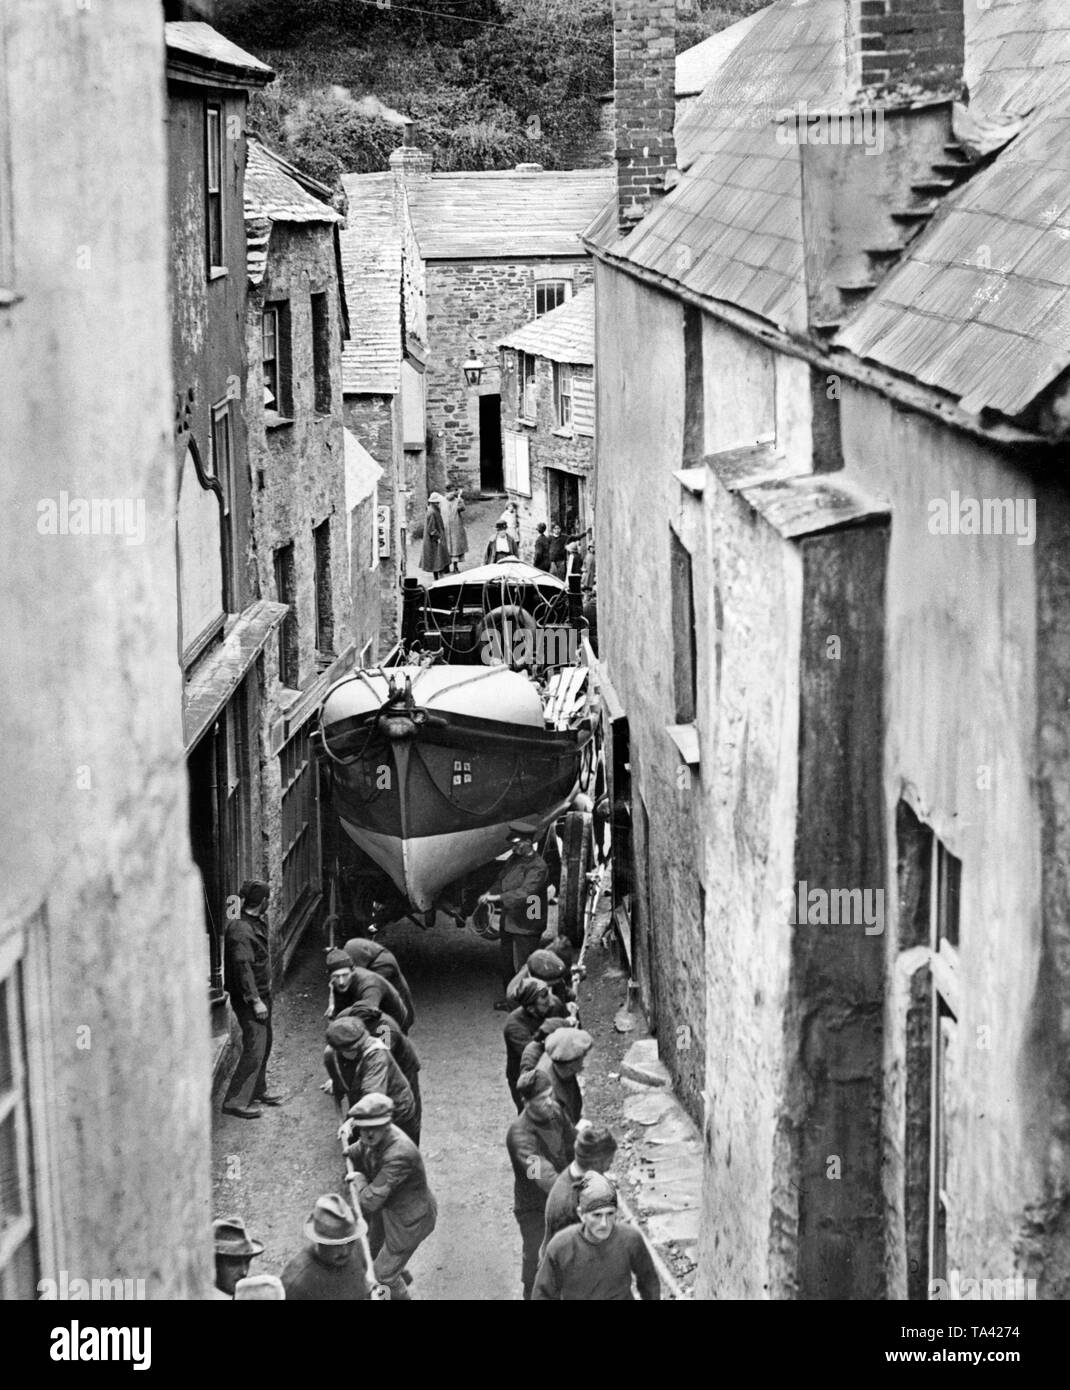 Die Bewohner des Dorfes Tintagel in Cornwall ein rettungsboot durch die engen Gassen des Dorfes für eine Übung ziehen. Stockfoto